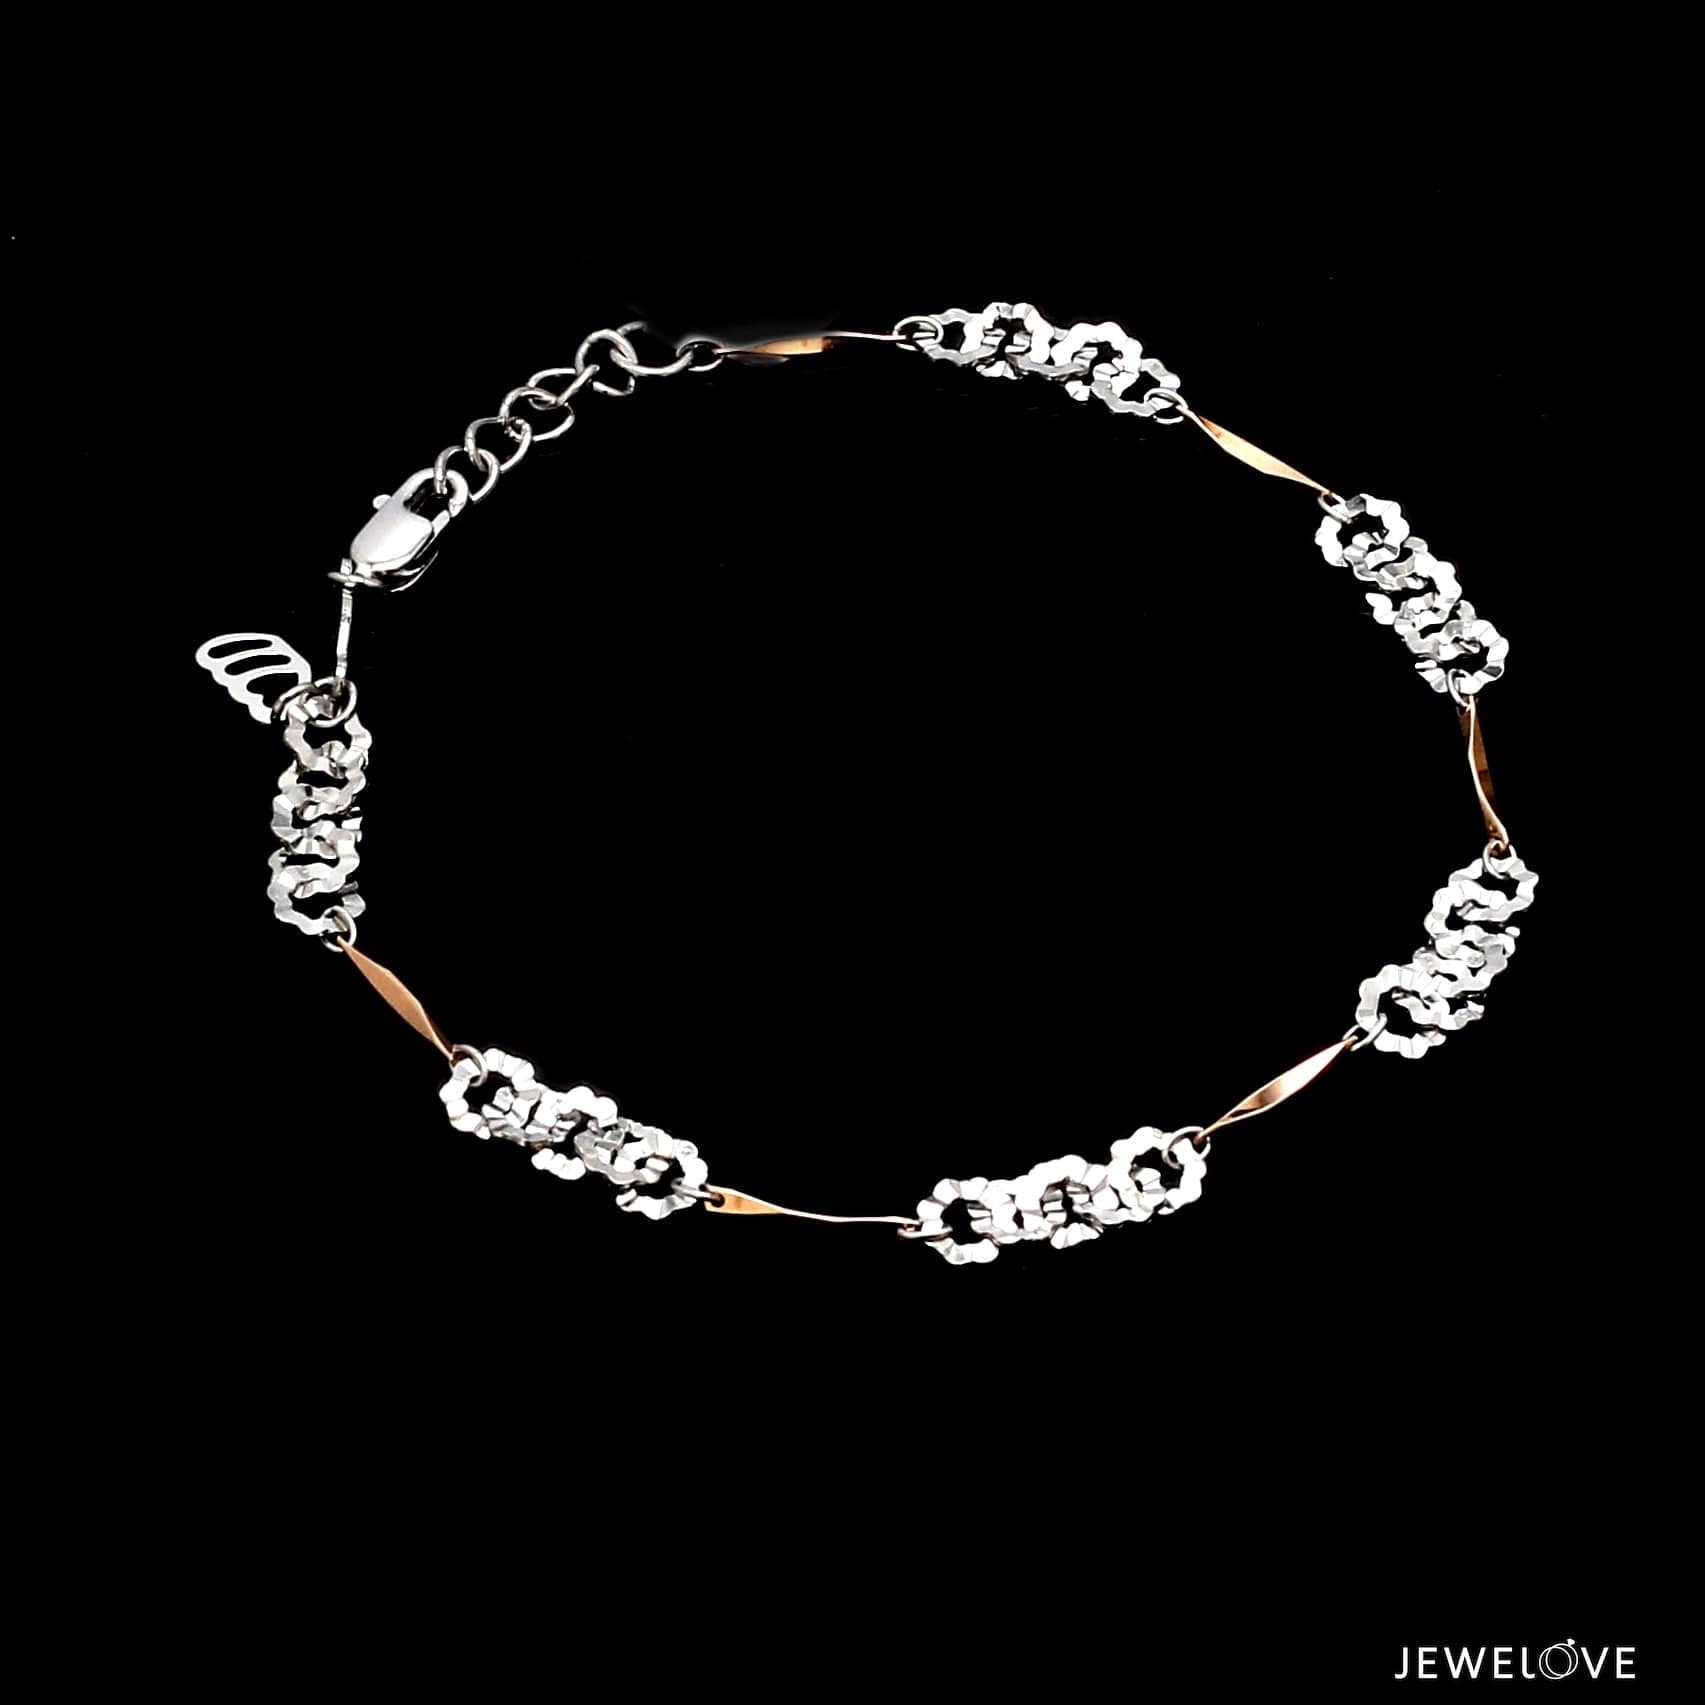 Kira Enameled Bracelet: Women's Designer Bracelets | Tory Burch | Enamel  bracelet, Womens jewelry bracelets, Bracelet designs